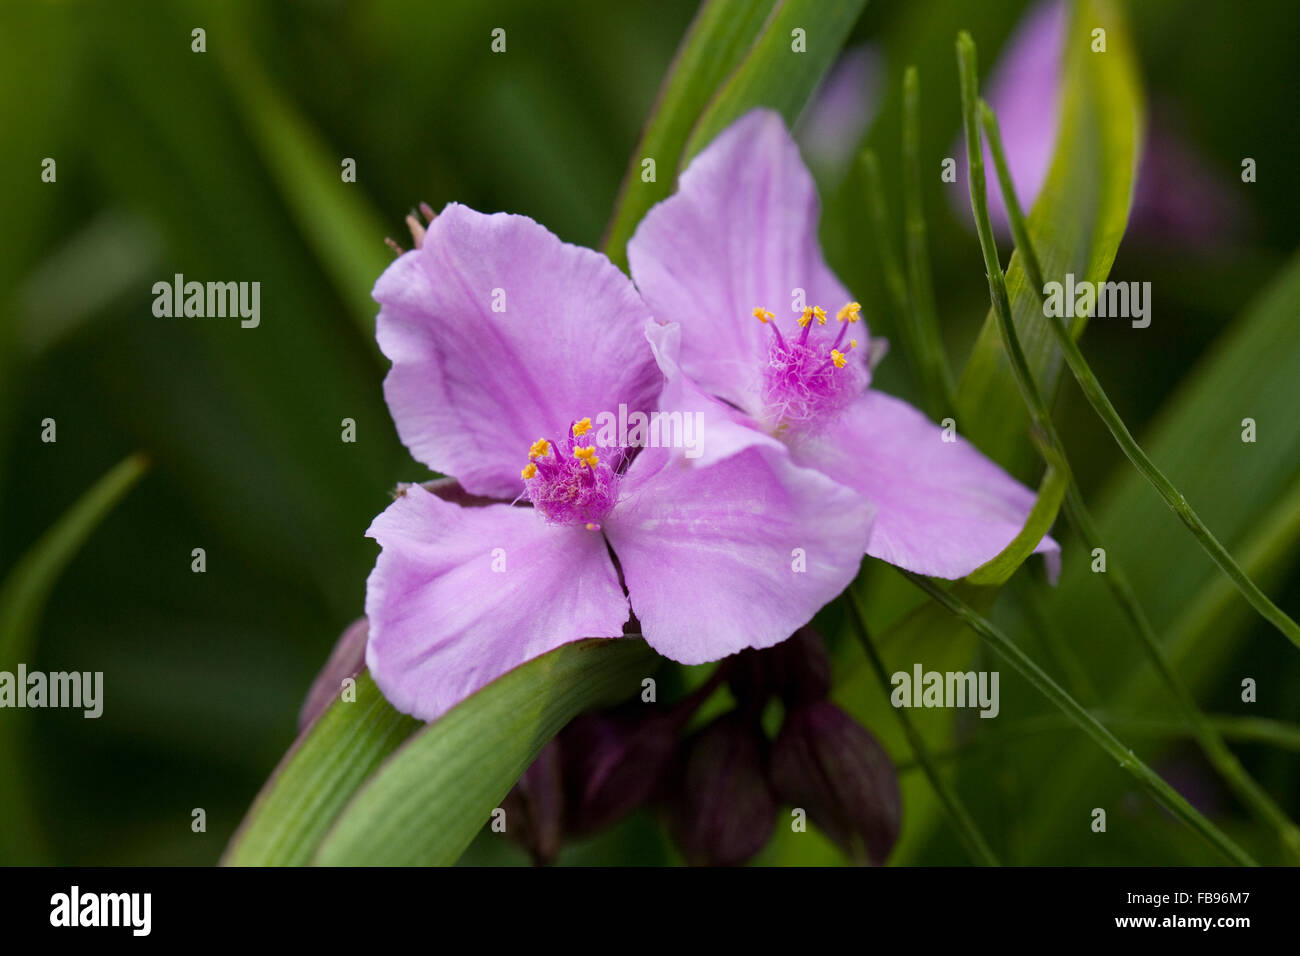 Tradescantia 'Concord Grape' flower. Spiderwort in an English garden. Stock Photo